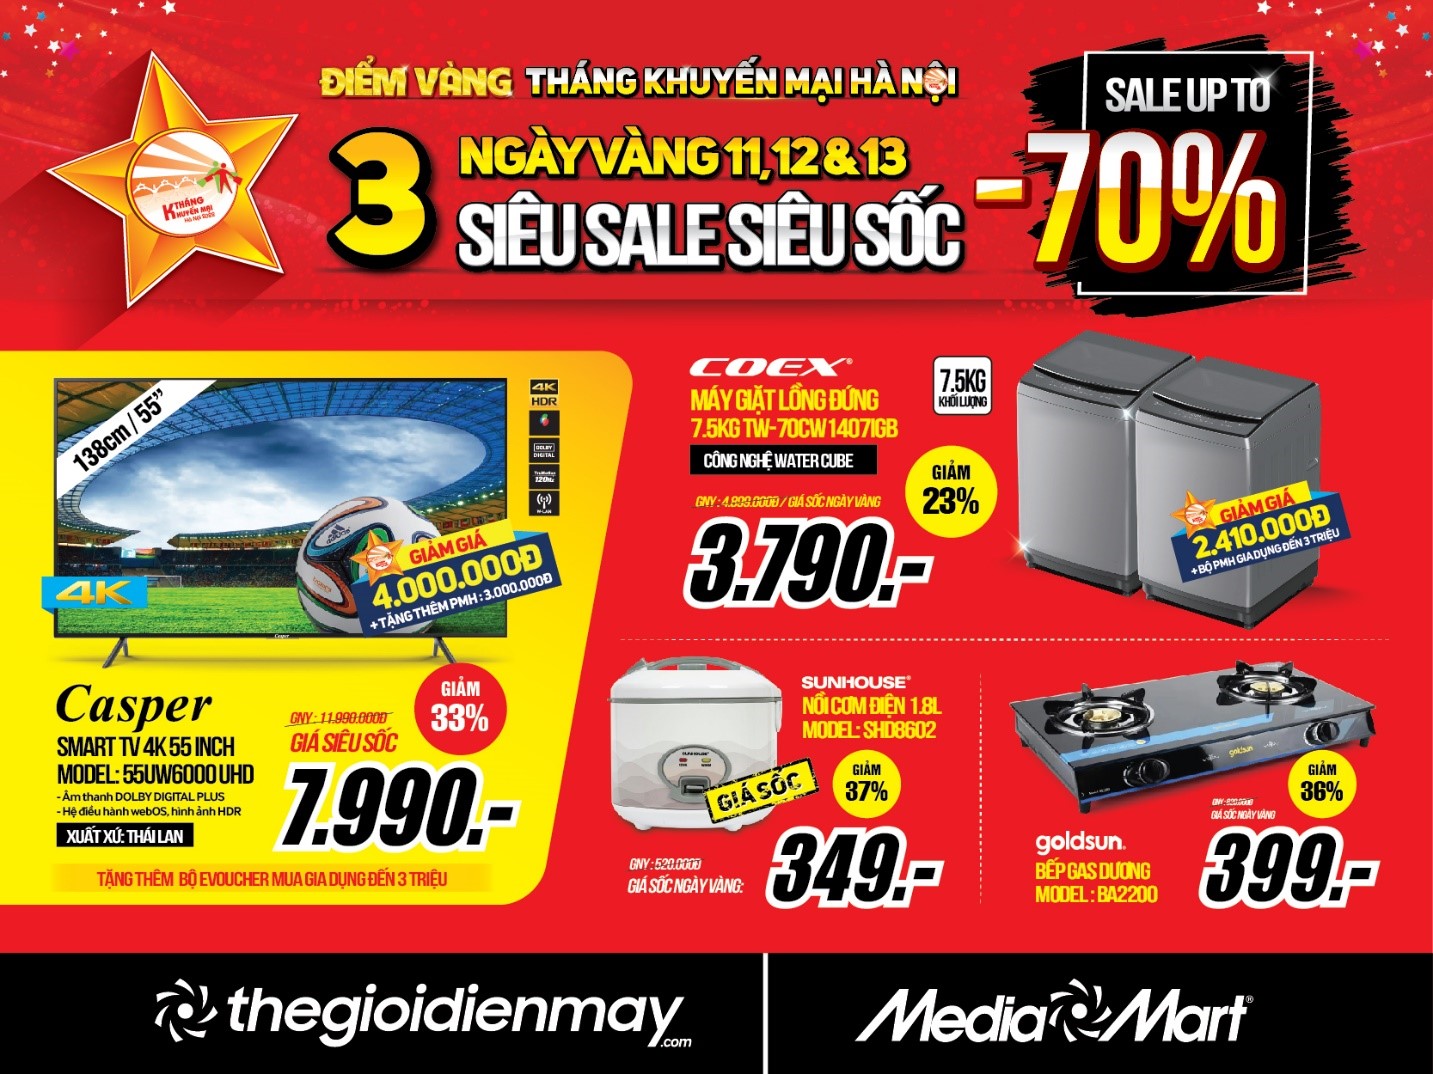 mediamart 3 days sales 1